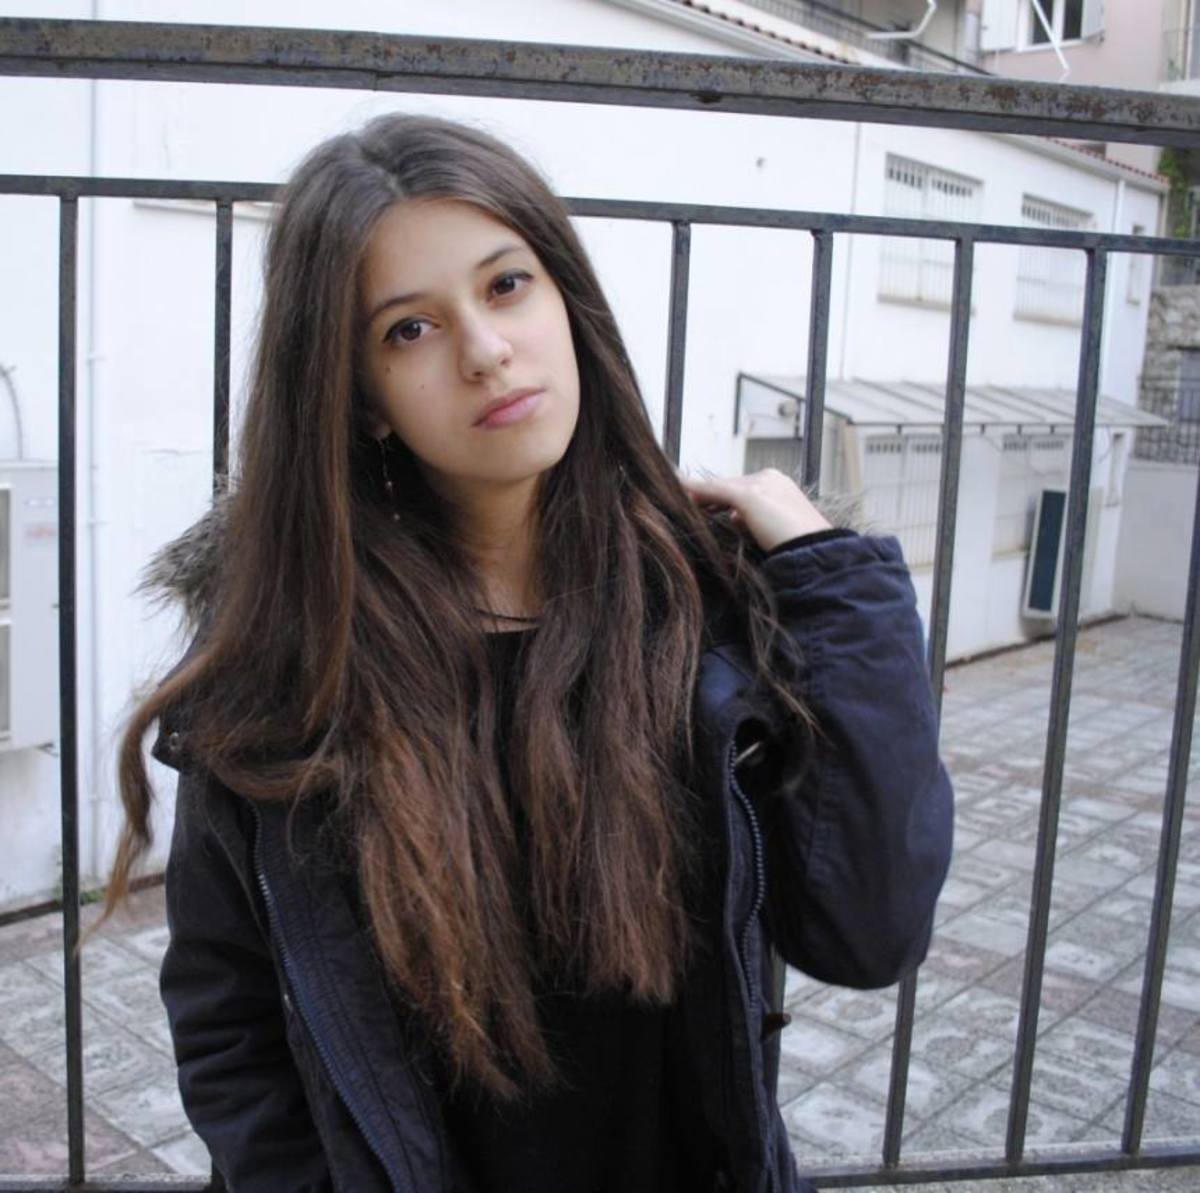 Νεκταρία Αναστασοπούλου: Η 18χρονη που “λύγισε” το ίντερνετ και έγινε viral